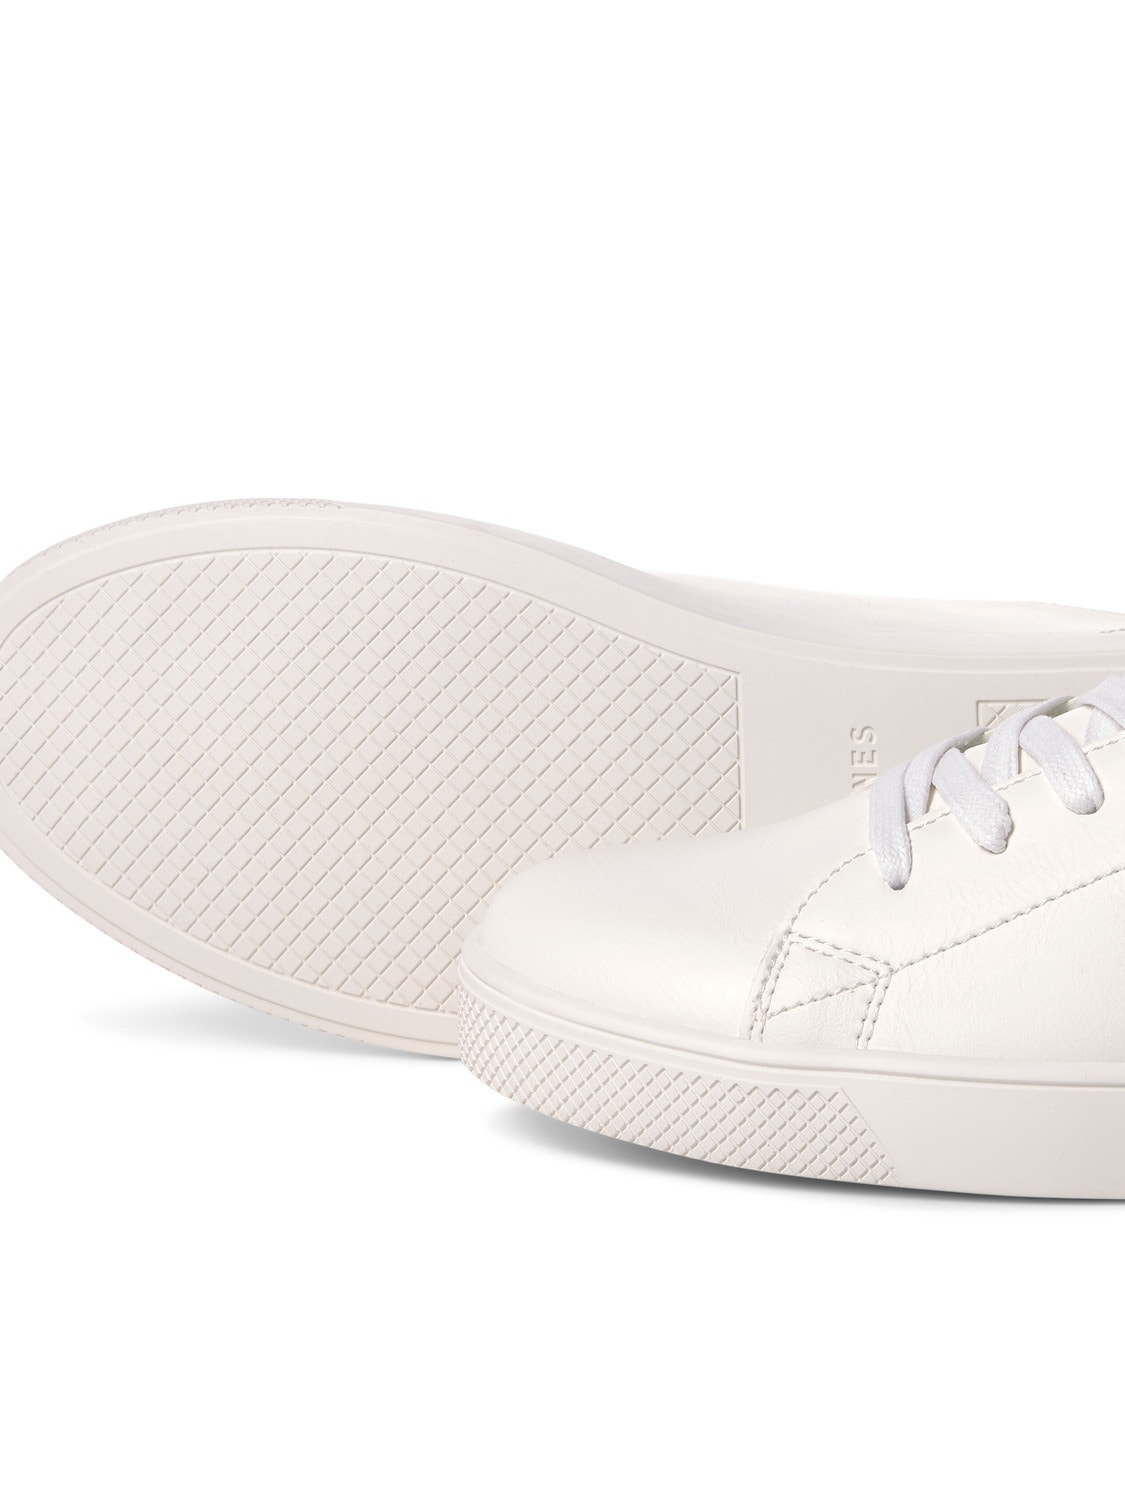 Jack & Jones Sneaker -White - 12203642